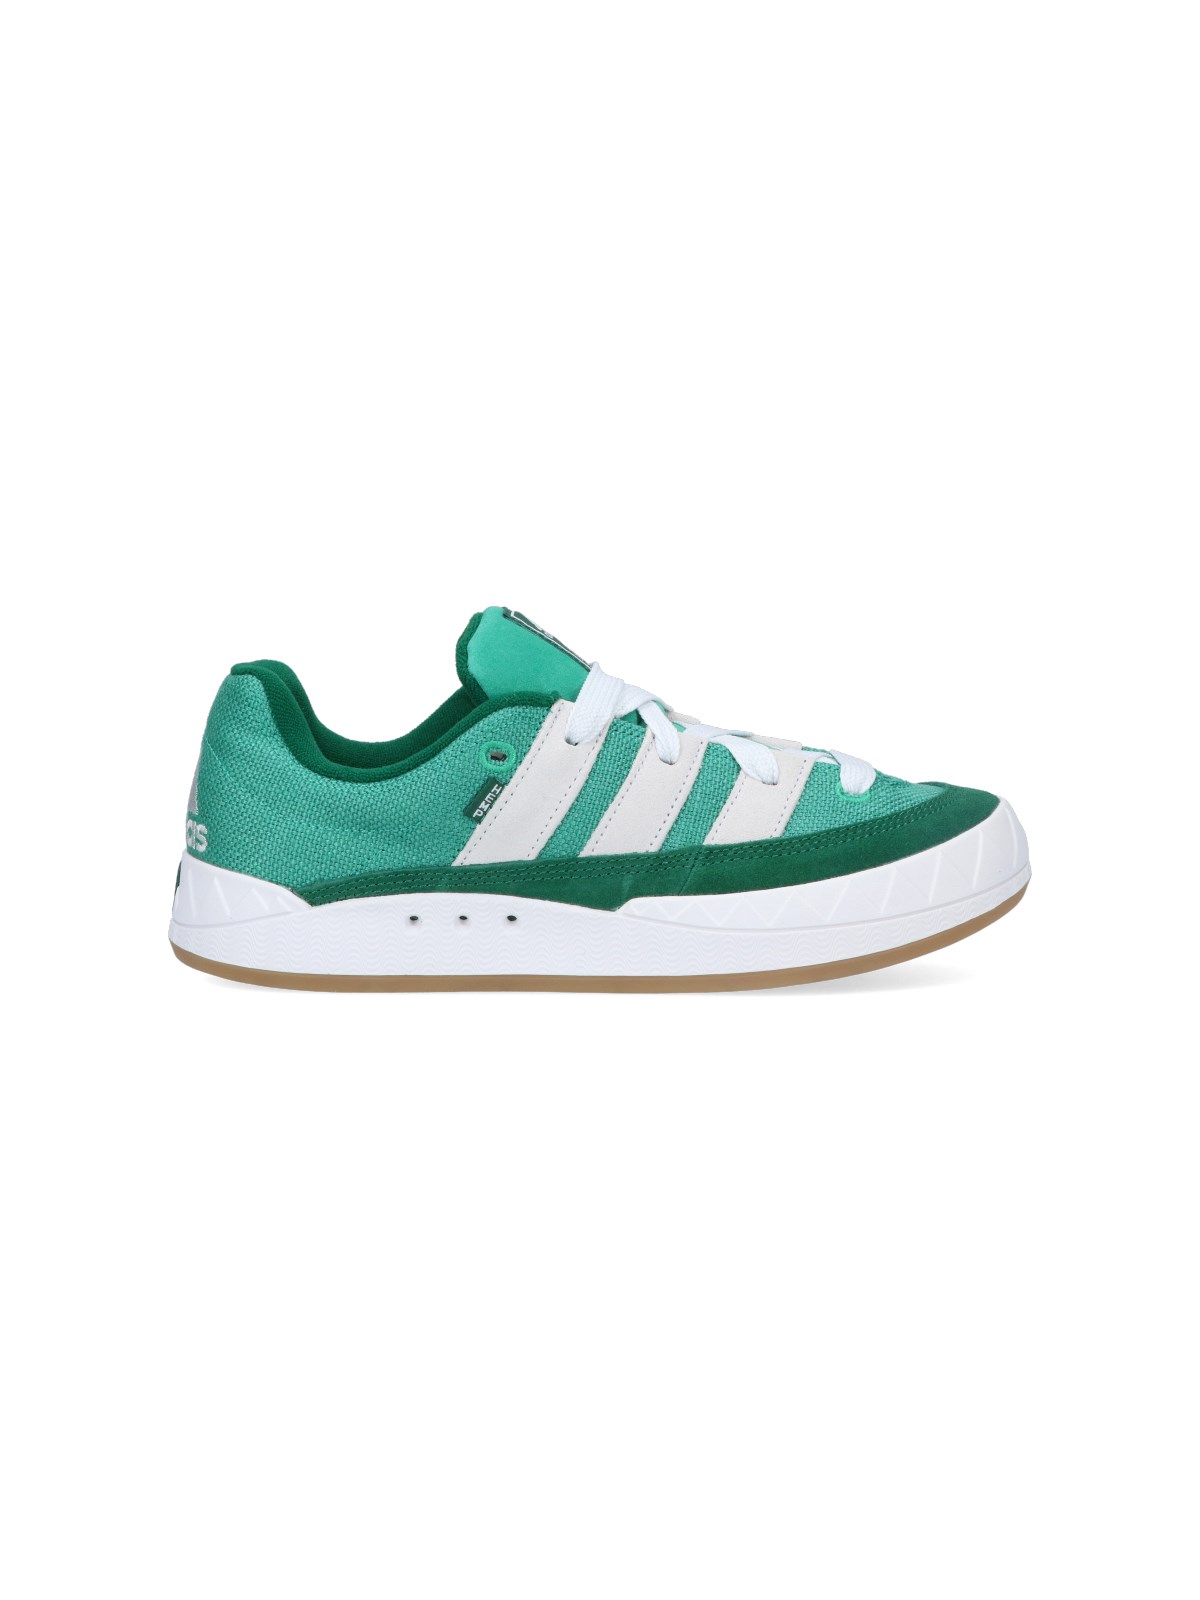 Adidas Originals Adimatic Trainers In Green